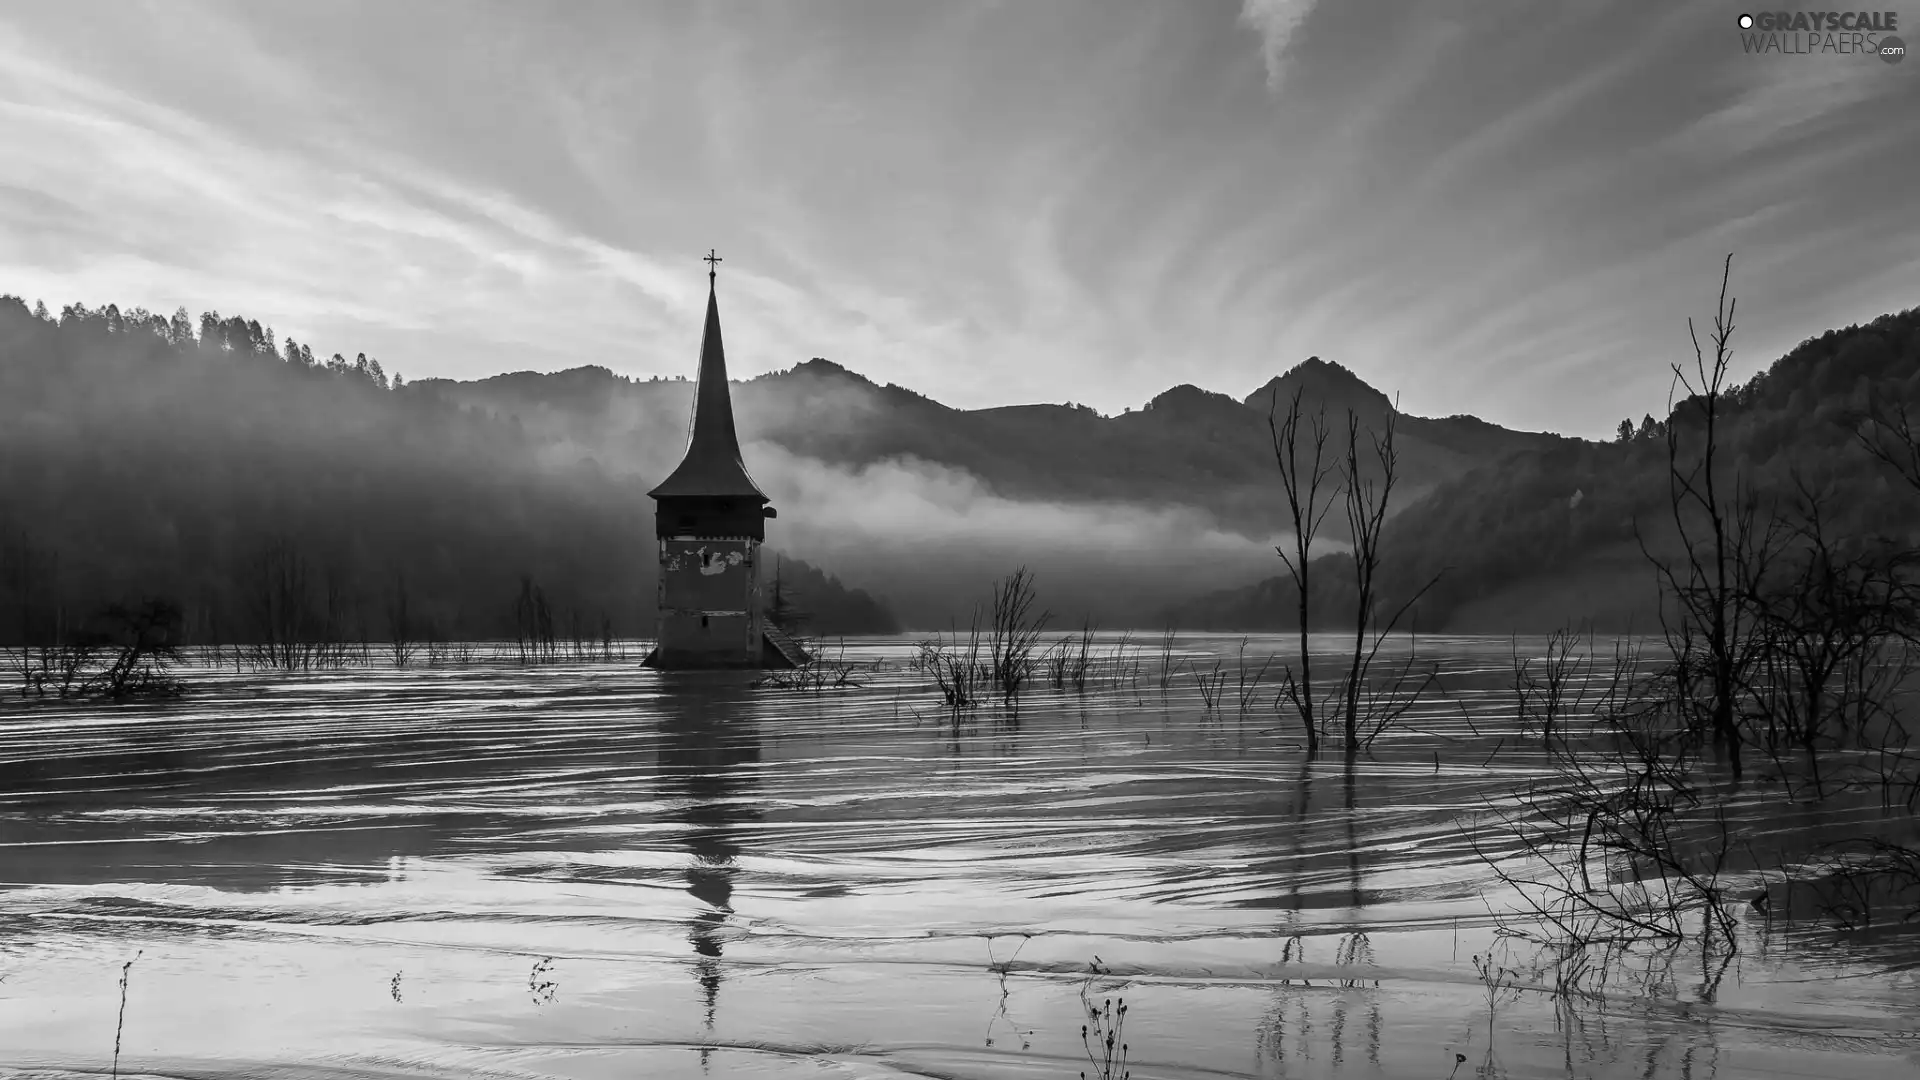 dawn, flood, Mountains, Fog, Church